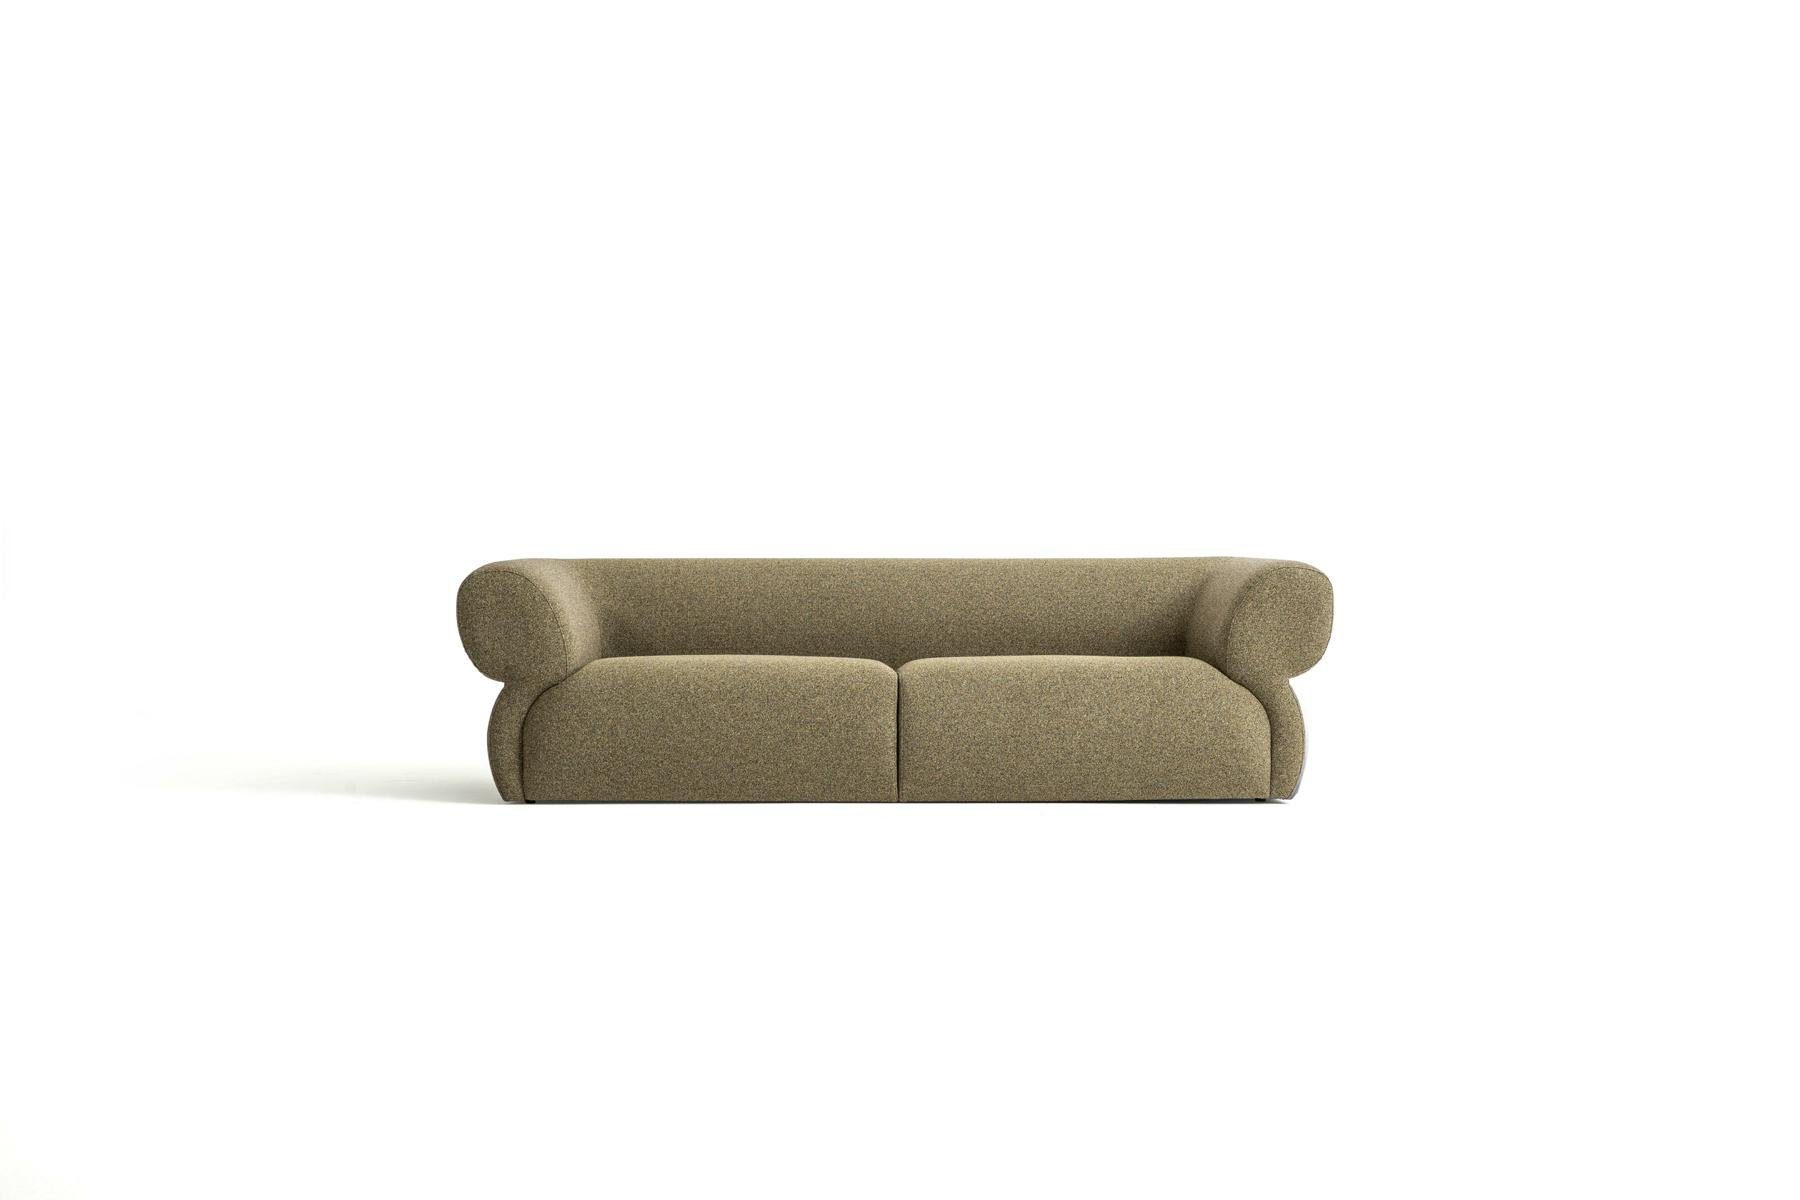 JVmoebel 3-Sitzer Luxus Europe Design 250cm in Sofa Wohnzimmer Braun Polstersofa Made Neu, Möbel Sitzer 3